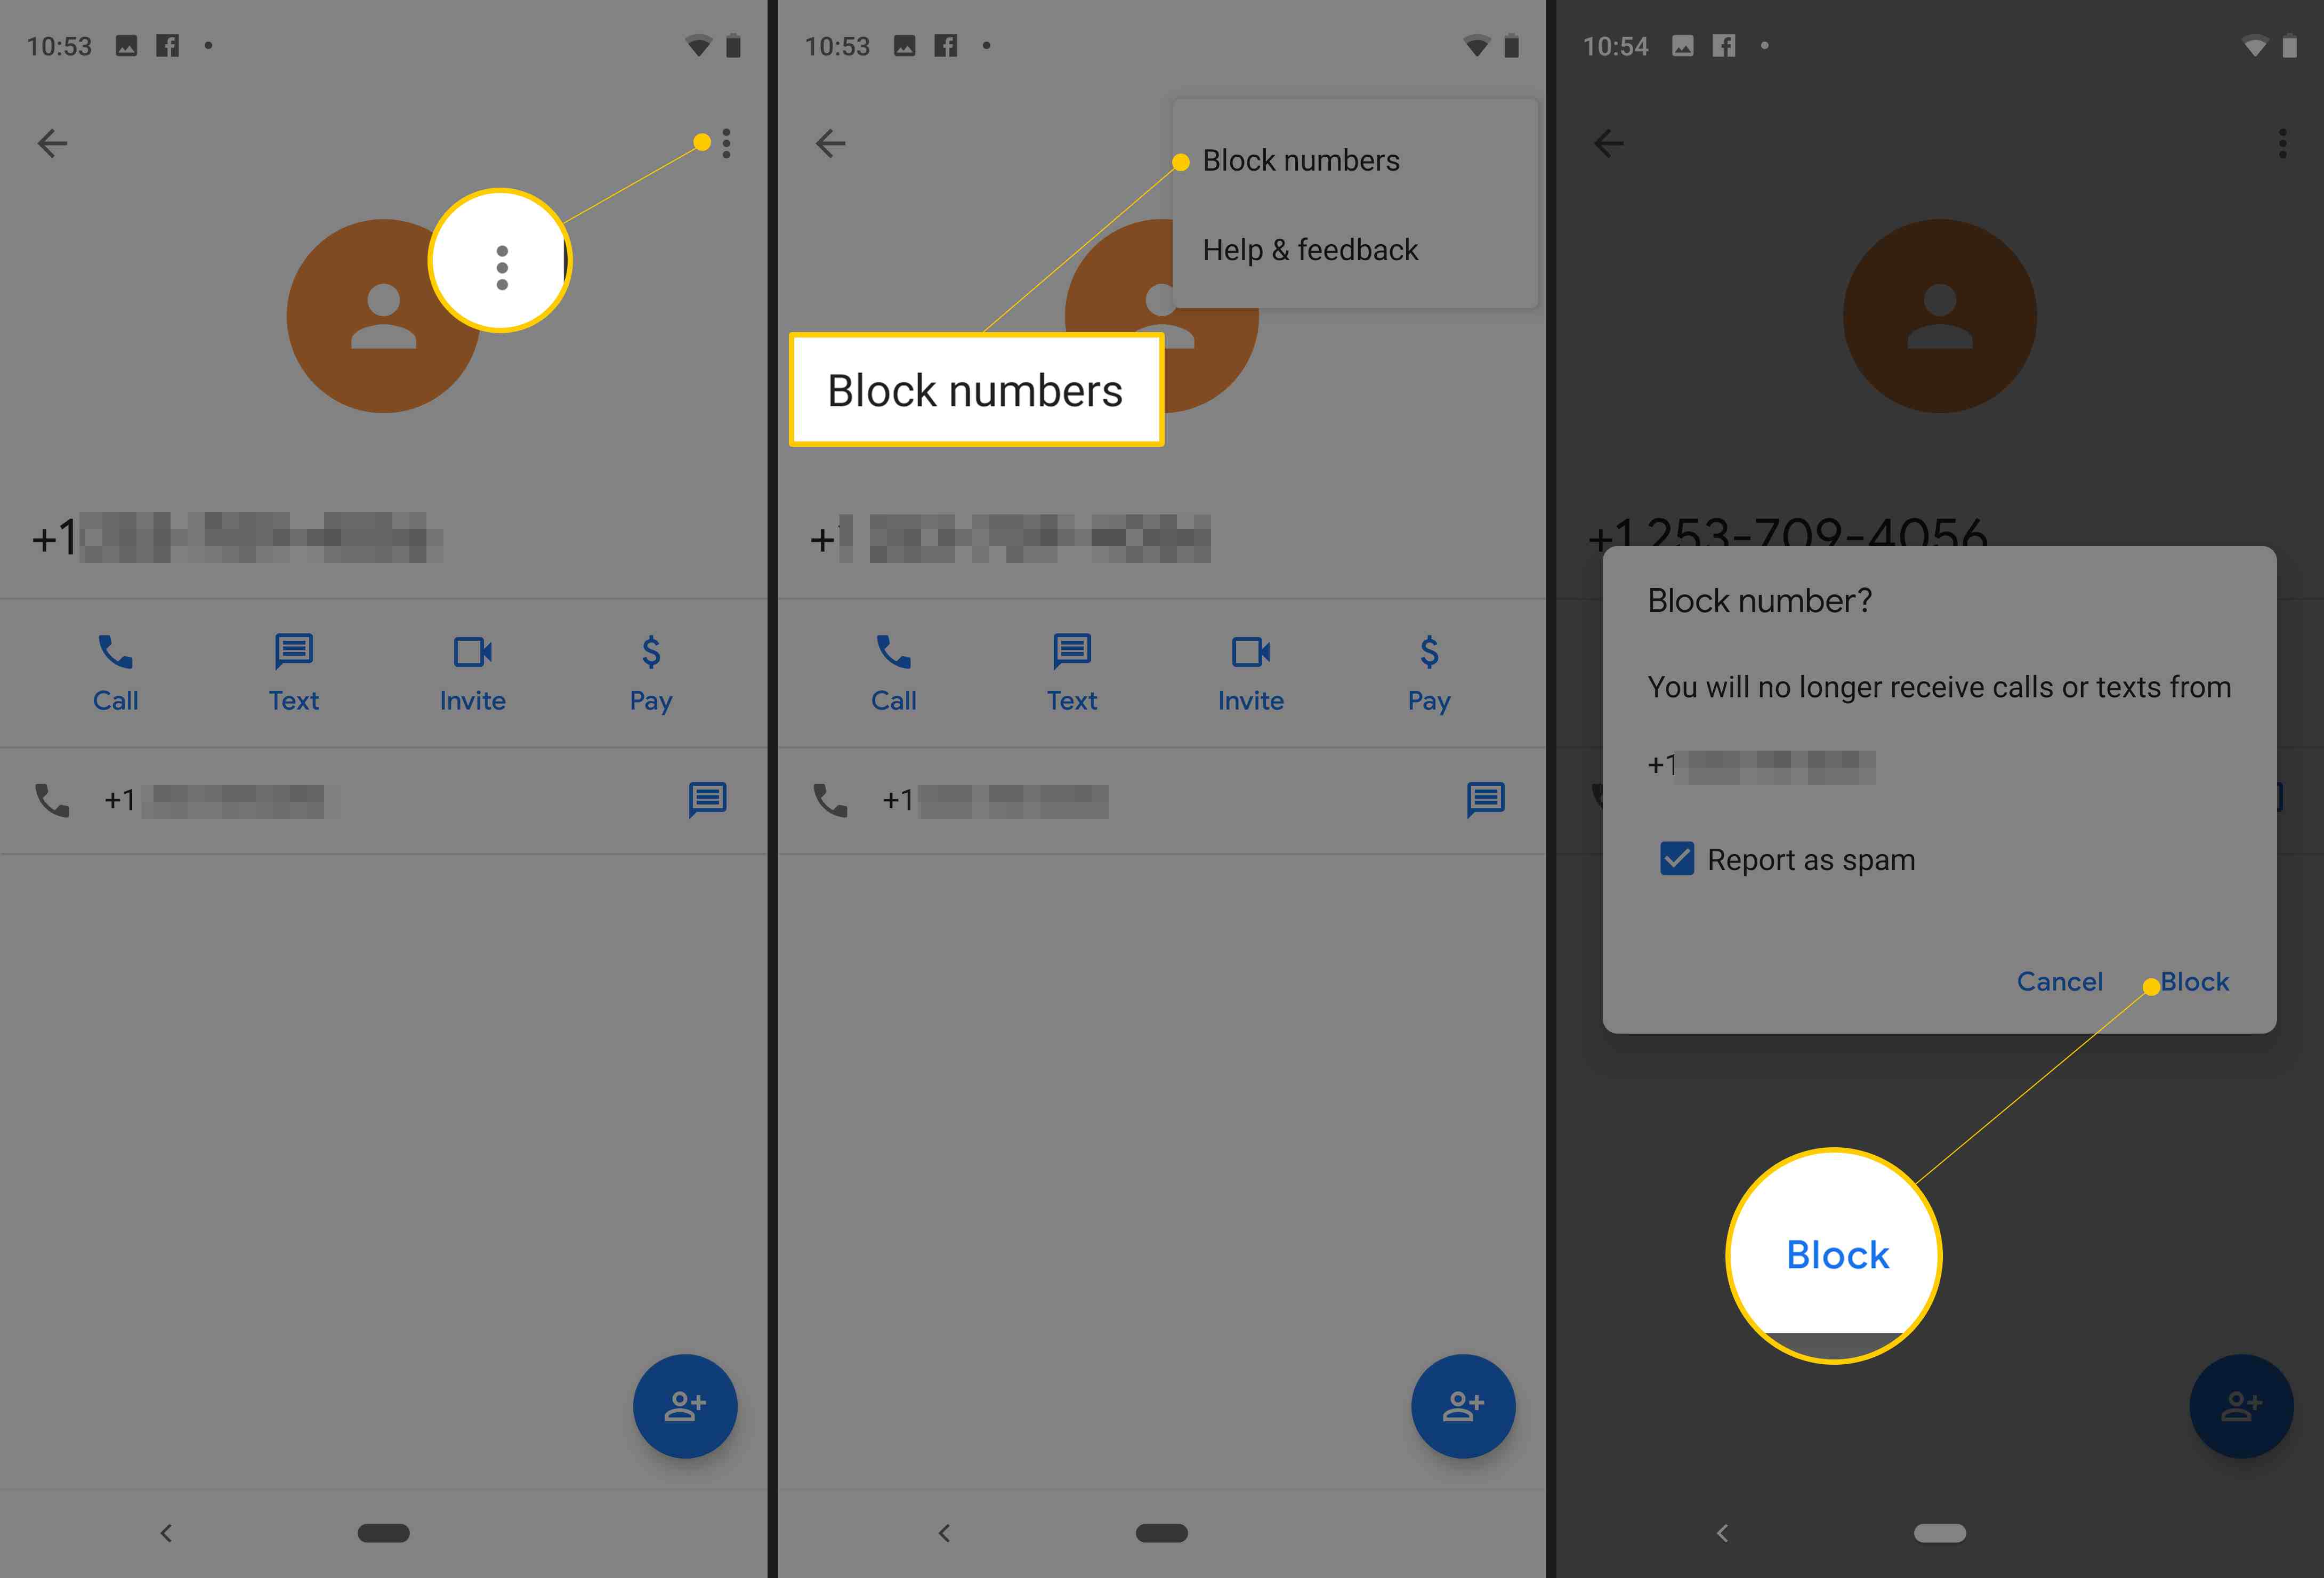 Tre Android-skärmar från Pixel visar vertikal punktmeny, menyalternativ för blocknummer och Block-knapp